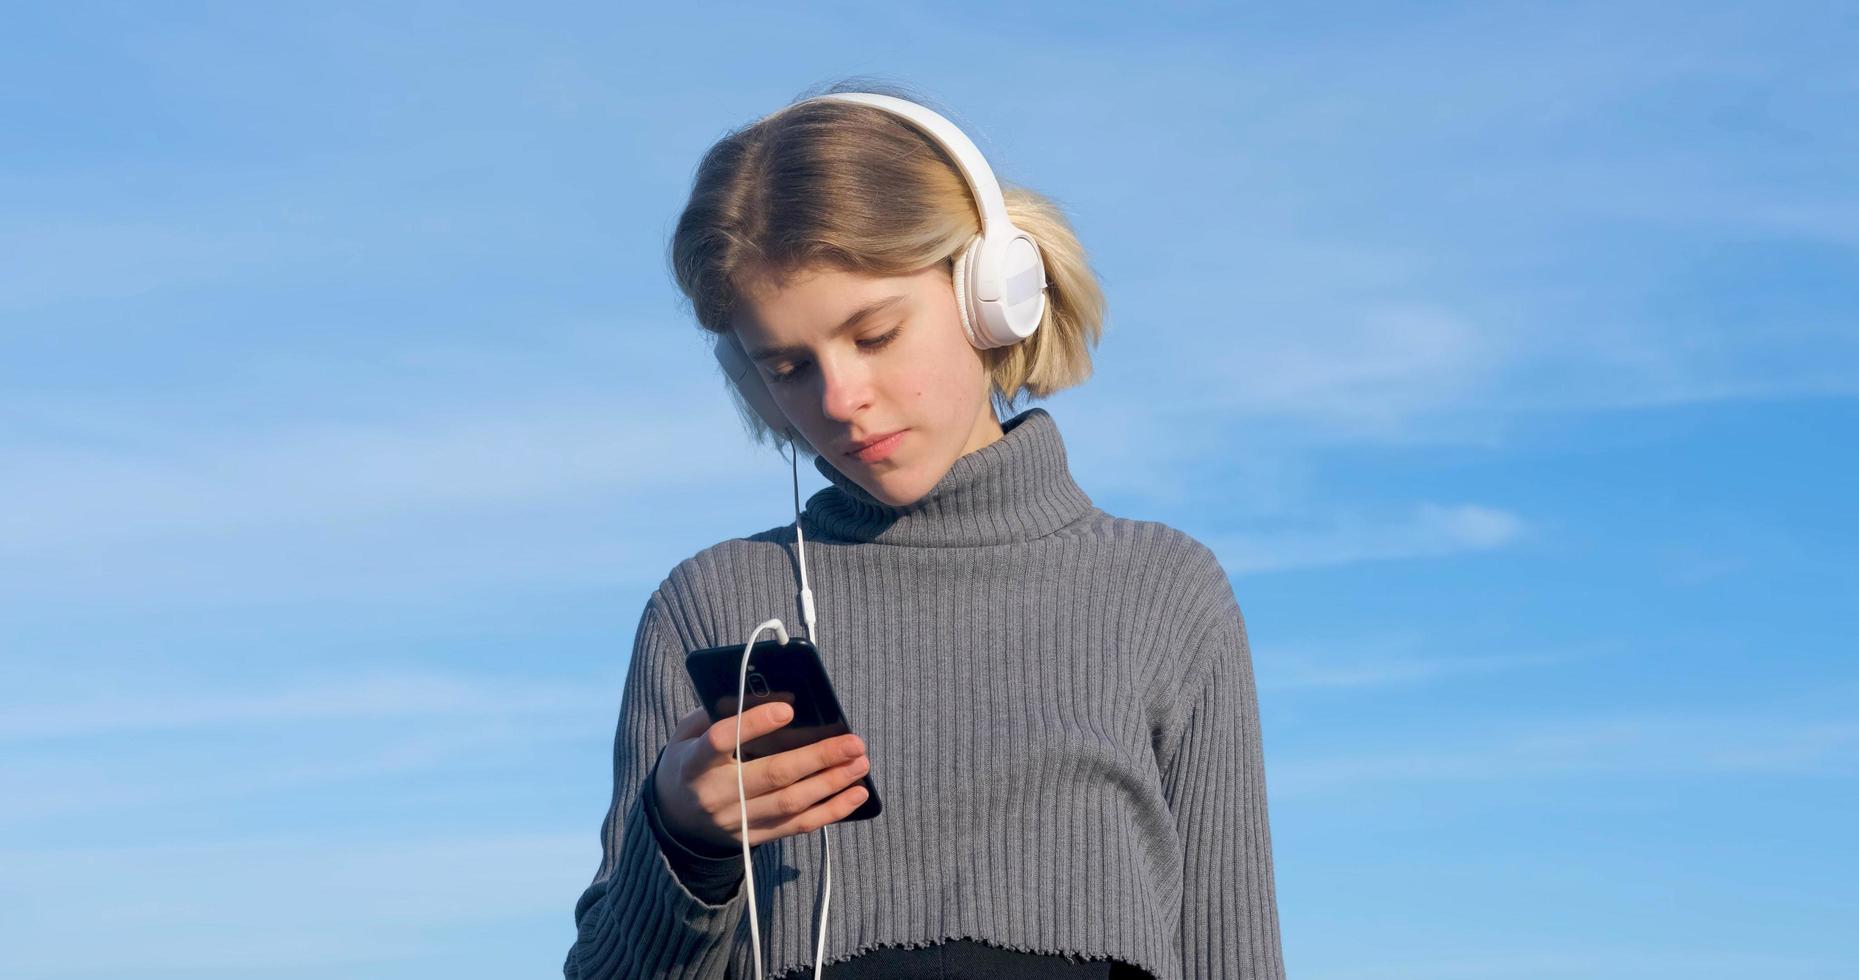 jonge knappe vrouw luistert naar muziek met een koptelefoon buiten op het strand tegen de zonnige blauwe hemel foto